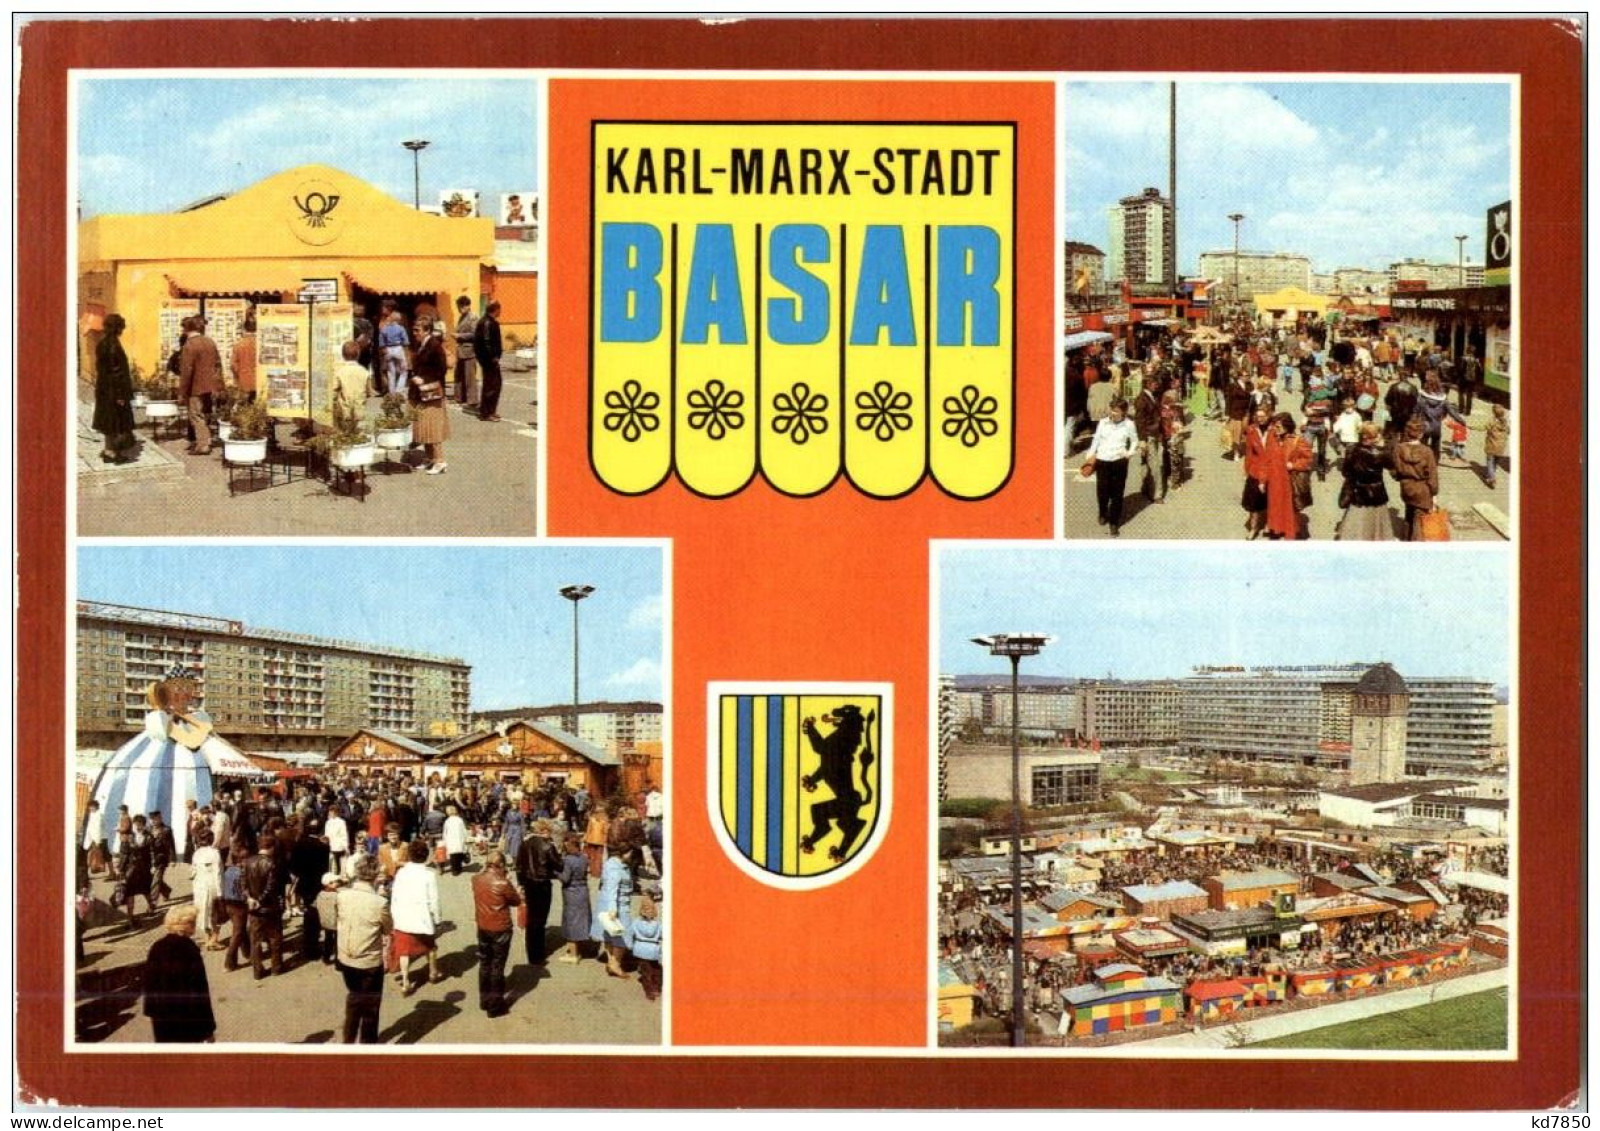 Karl MArx Stadt Basar - Chemnitz (Karl-Marx-Stadt 1953-1990)